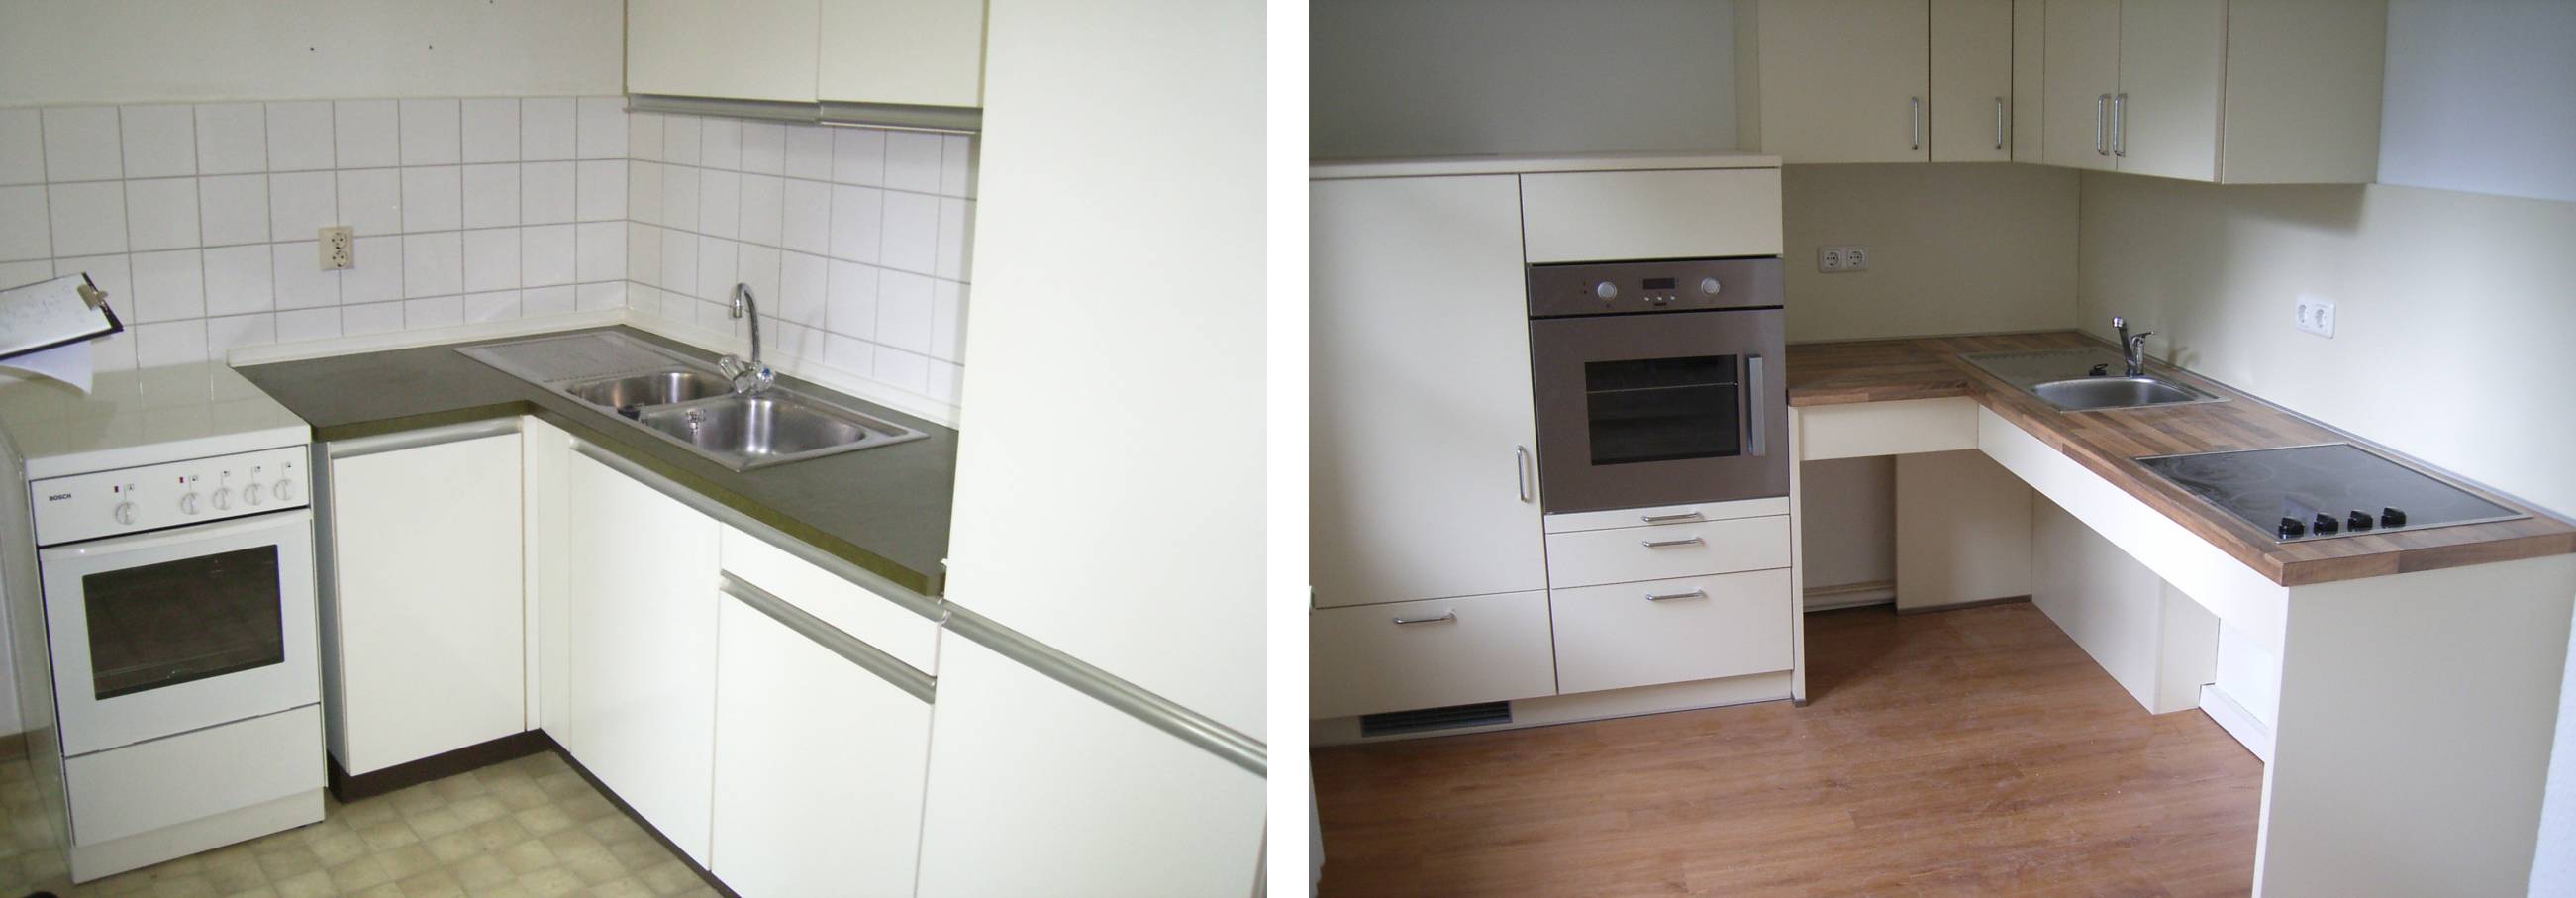 Vorher-Nachher-Umbaubeispiel: Eine klassische Einbauküche ist nun barrierefrei nutzbar. Der Backofen ist erhöht und die Arbeitsfläche unterfahrbar. 